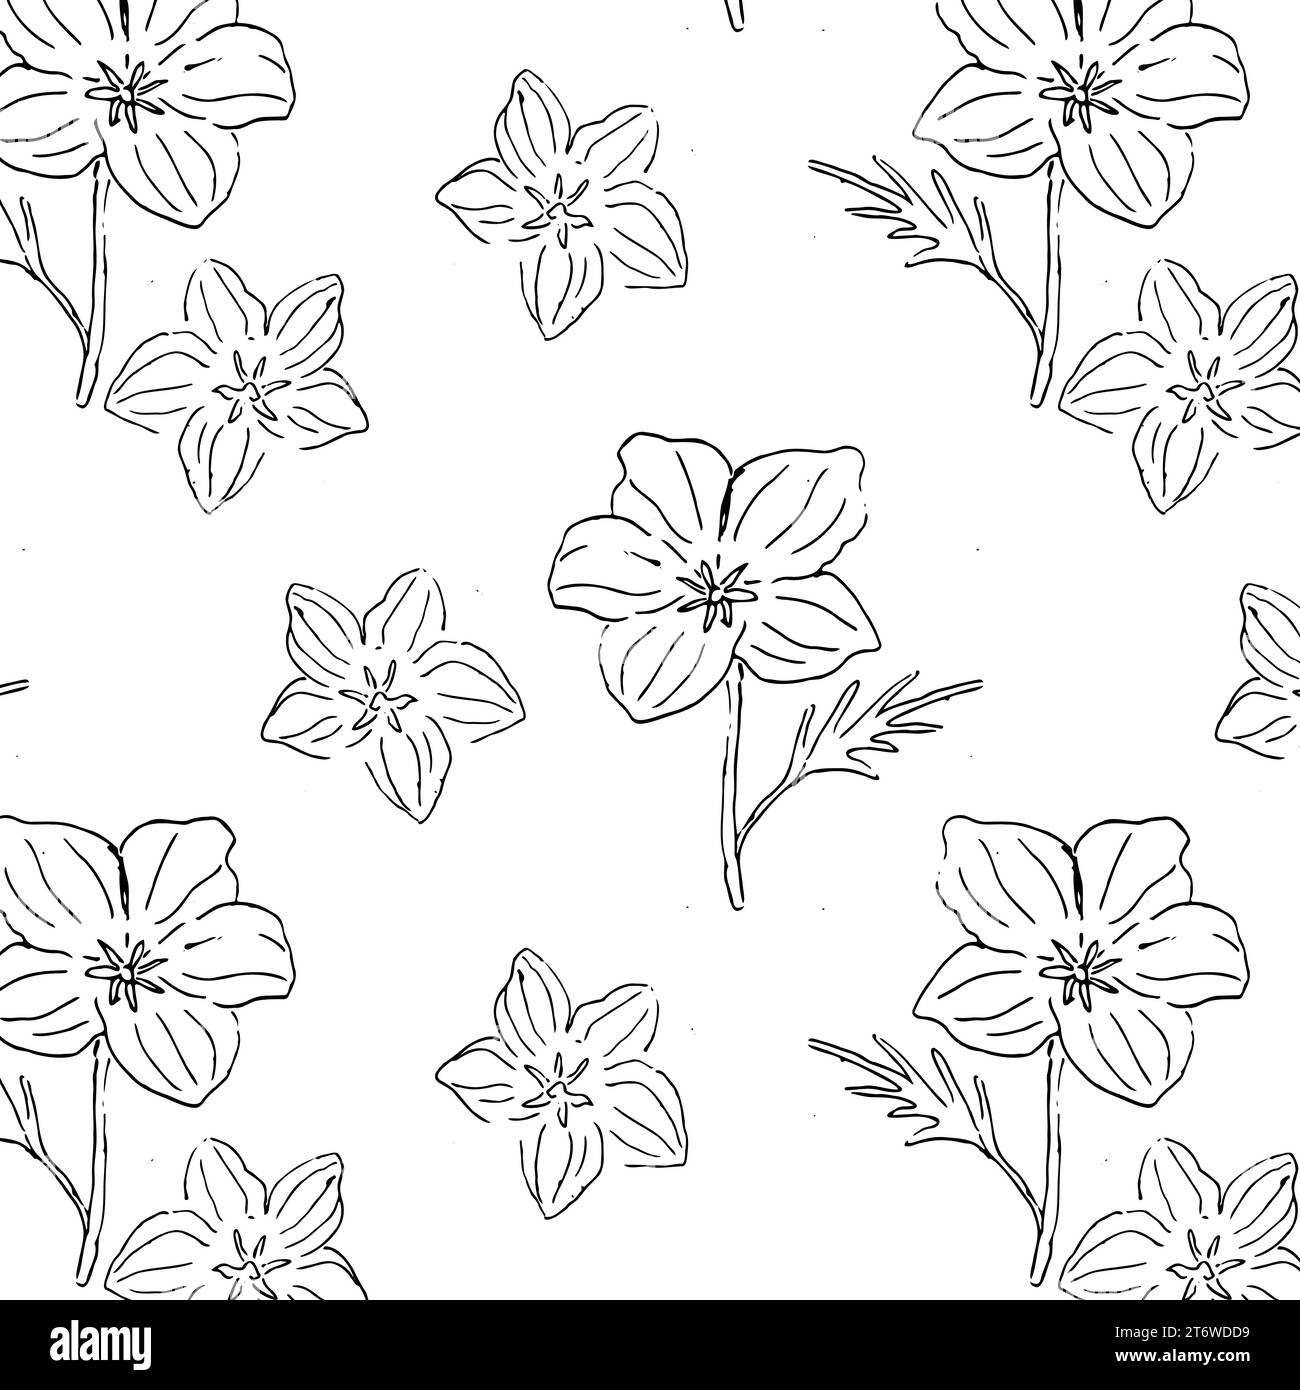 Motivo Monochome Fiore California Poppy senza cuciture Illustrazione Vettoriale